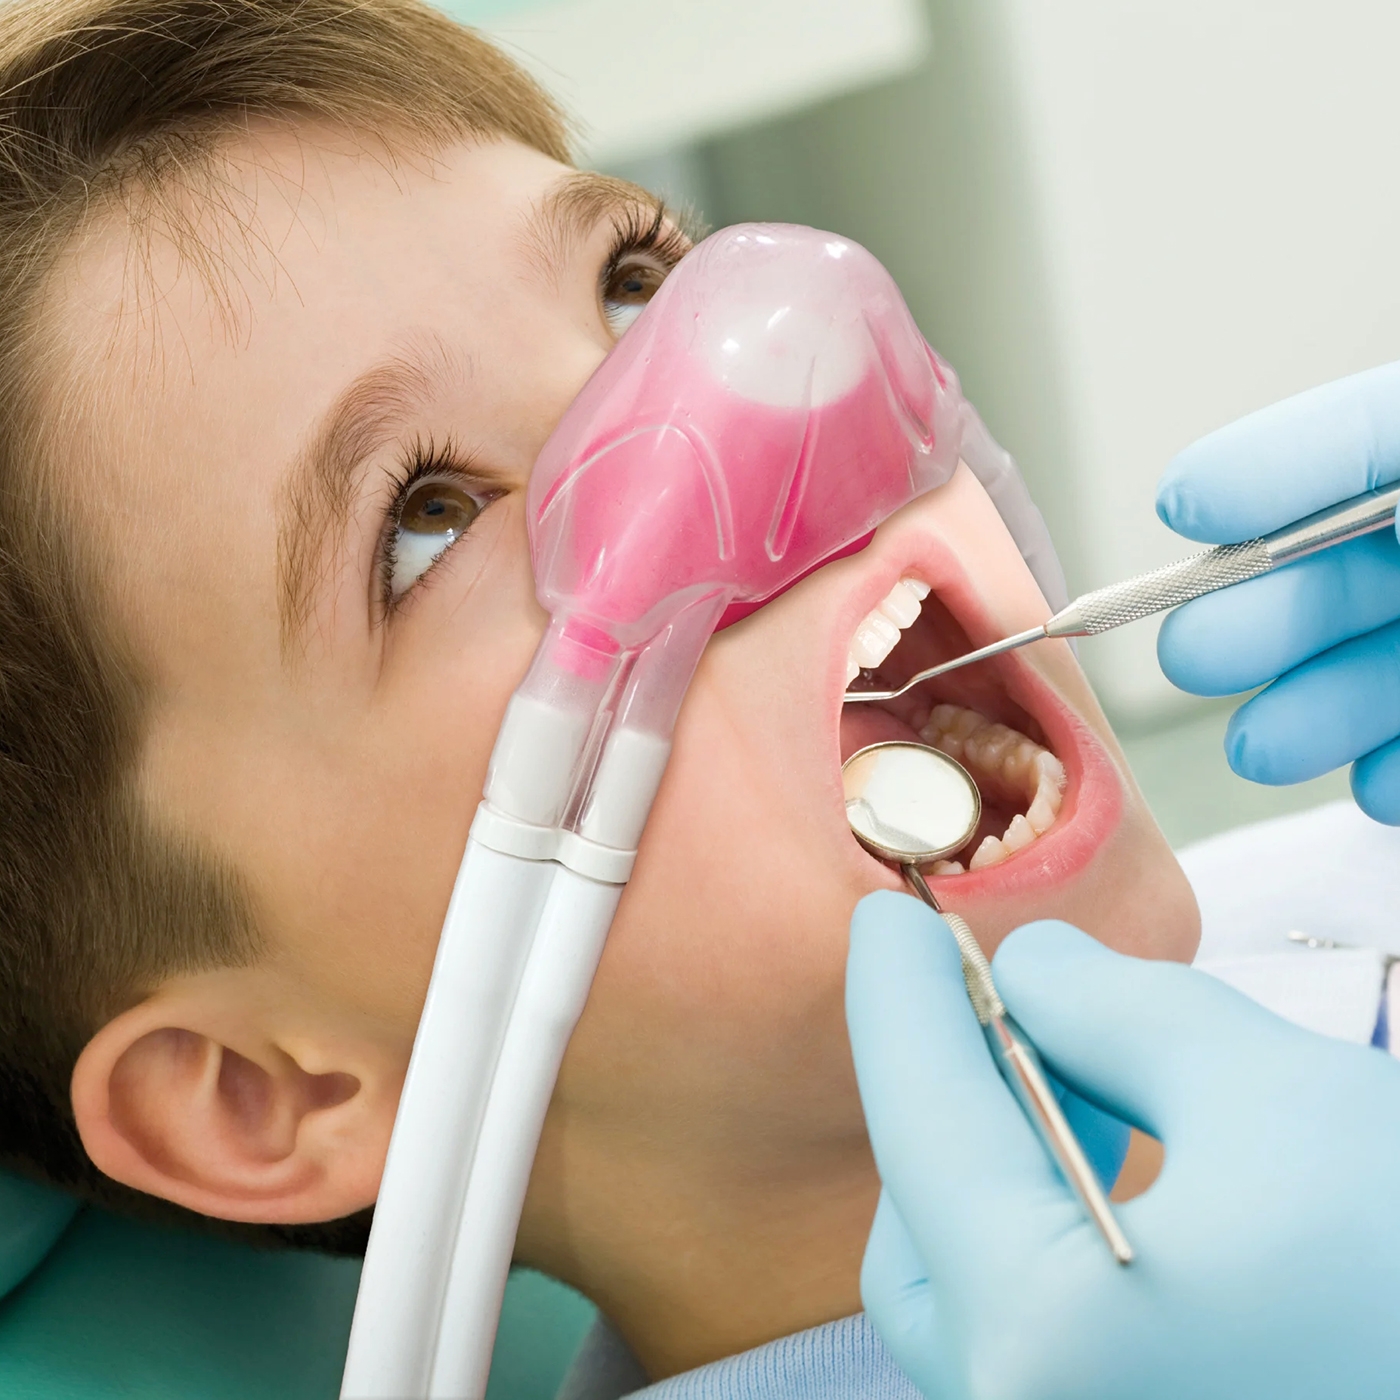 sedation-dentistry-for-children-1